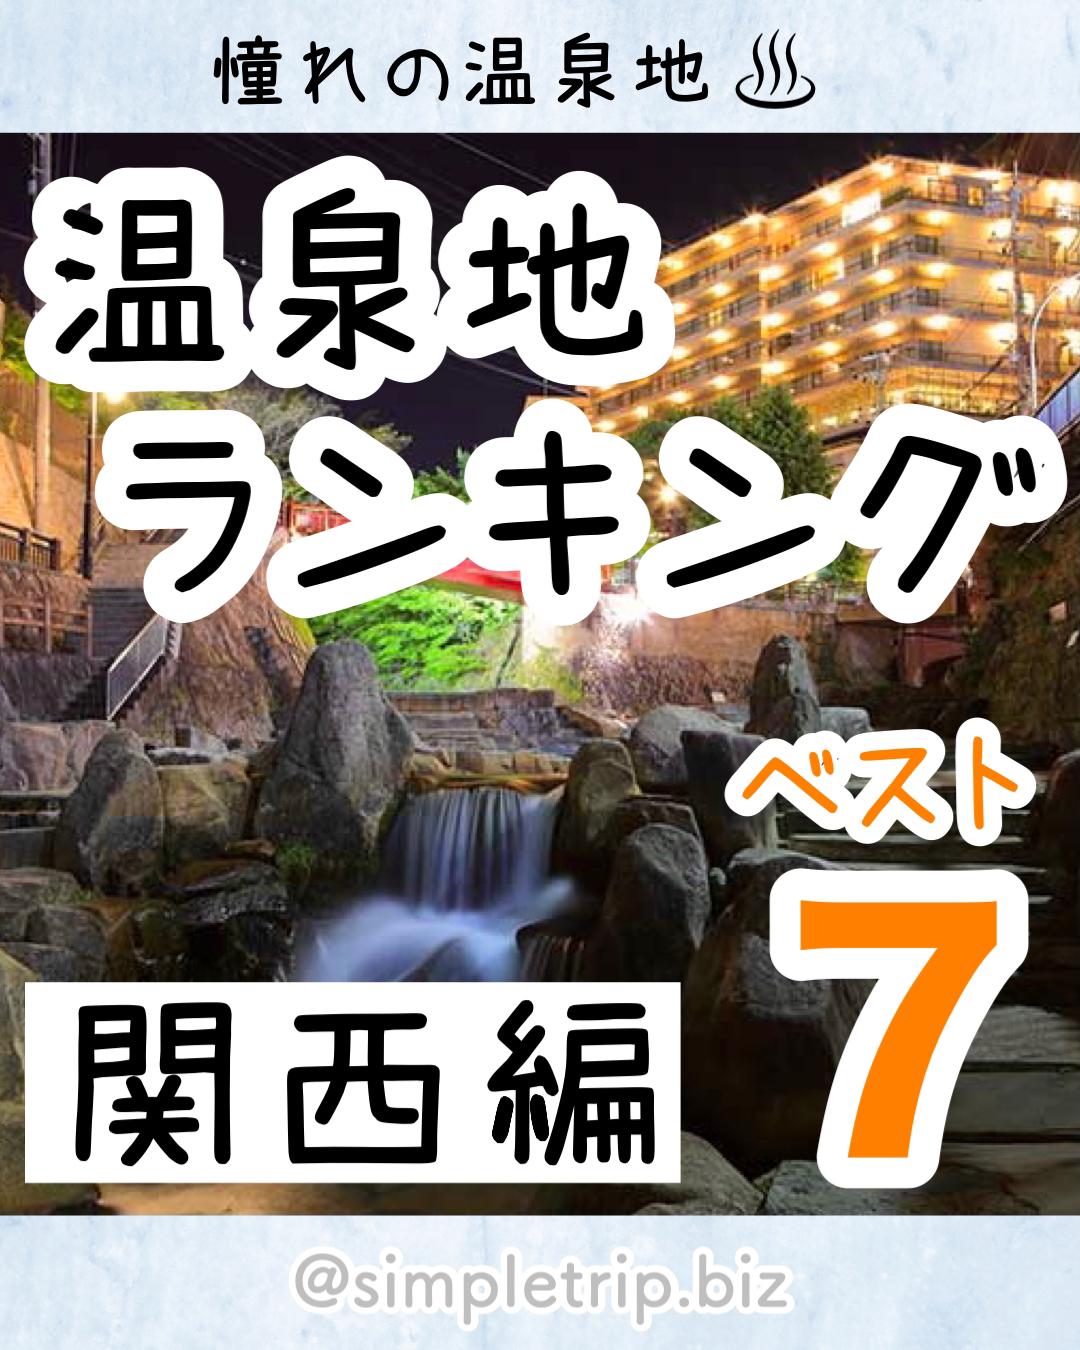 関西の温泉地ランキング ベスト7 もえとりっぷが投稿したフォトブック Sharee